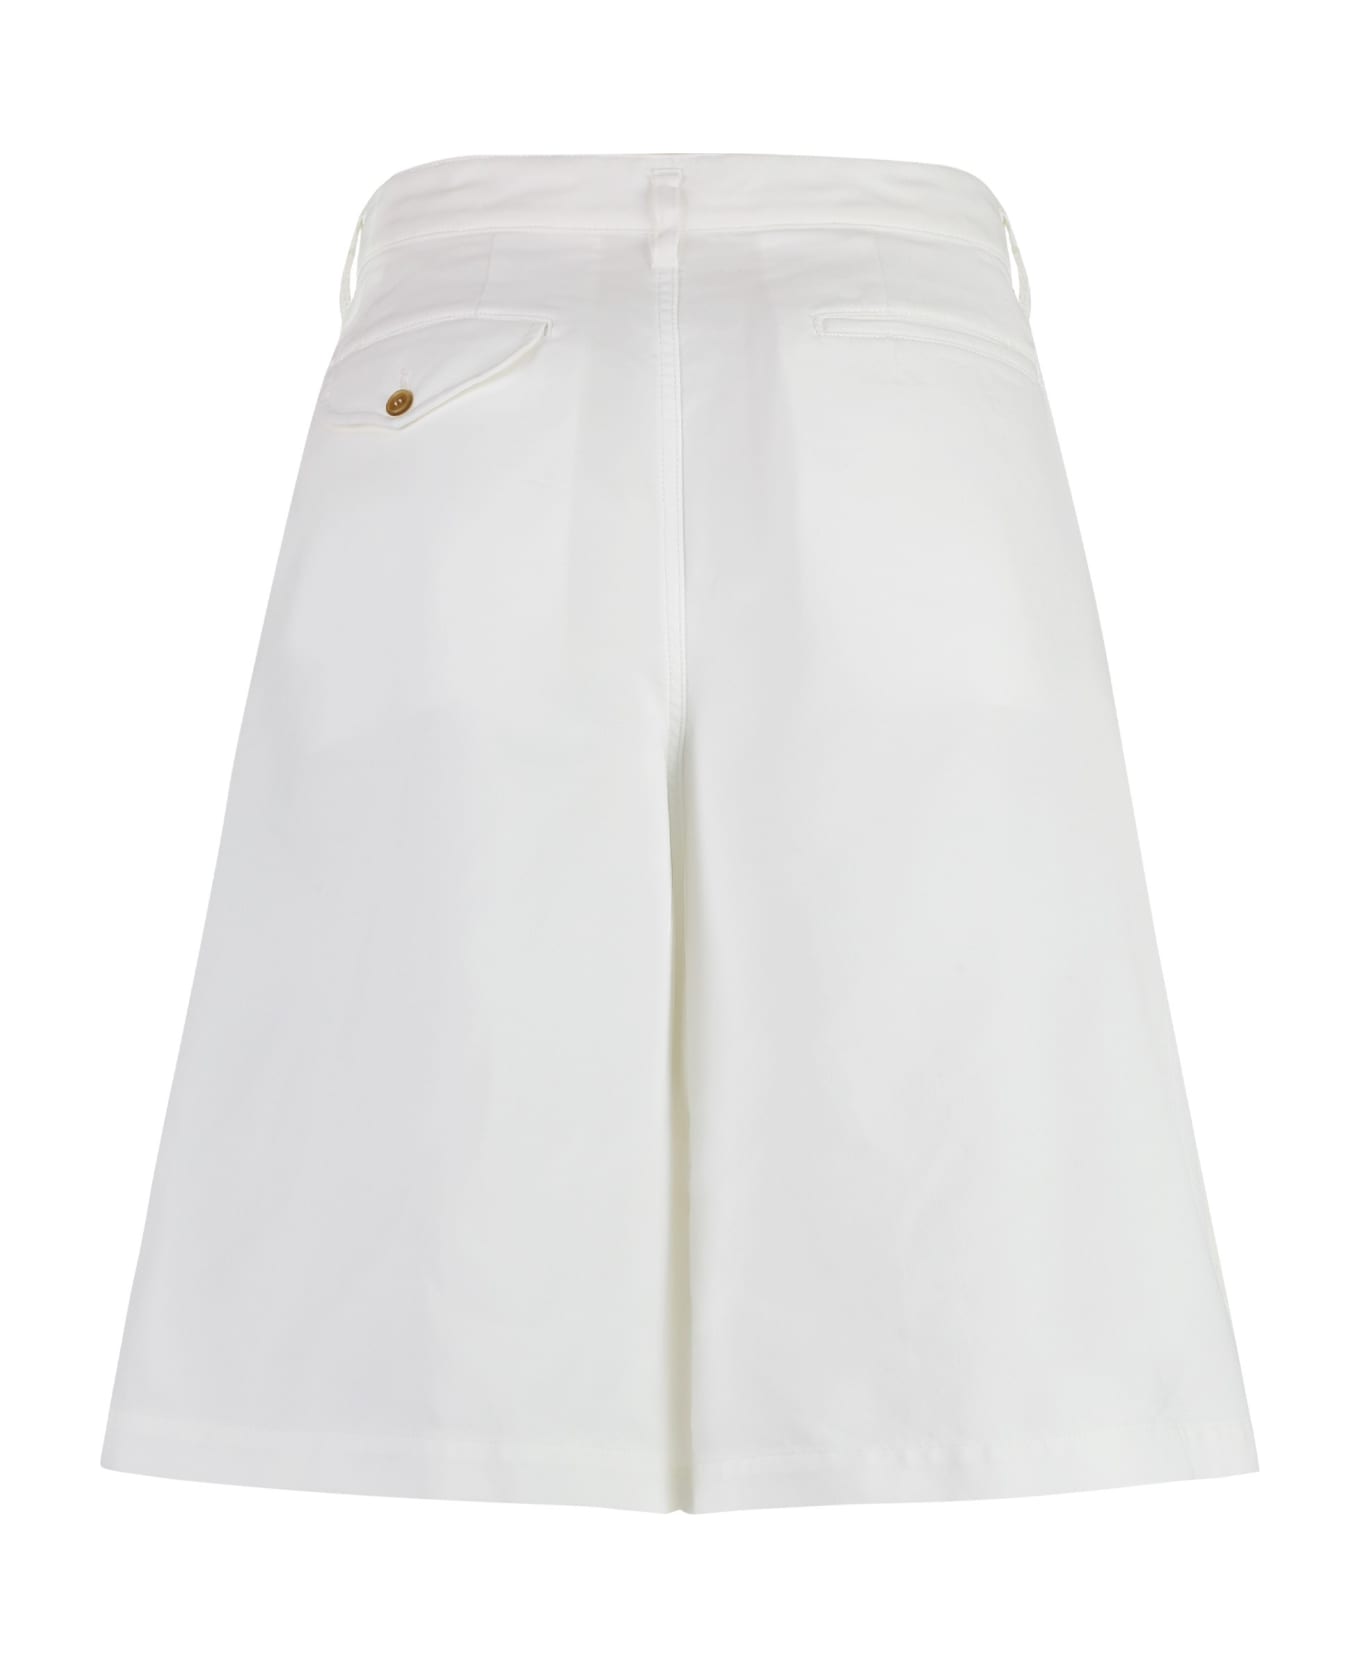 Comme des Garçons Shirt Techno Fabric Bermuda-shorts - White ショートパンツ